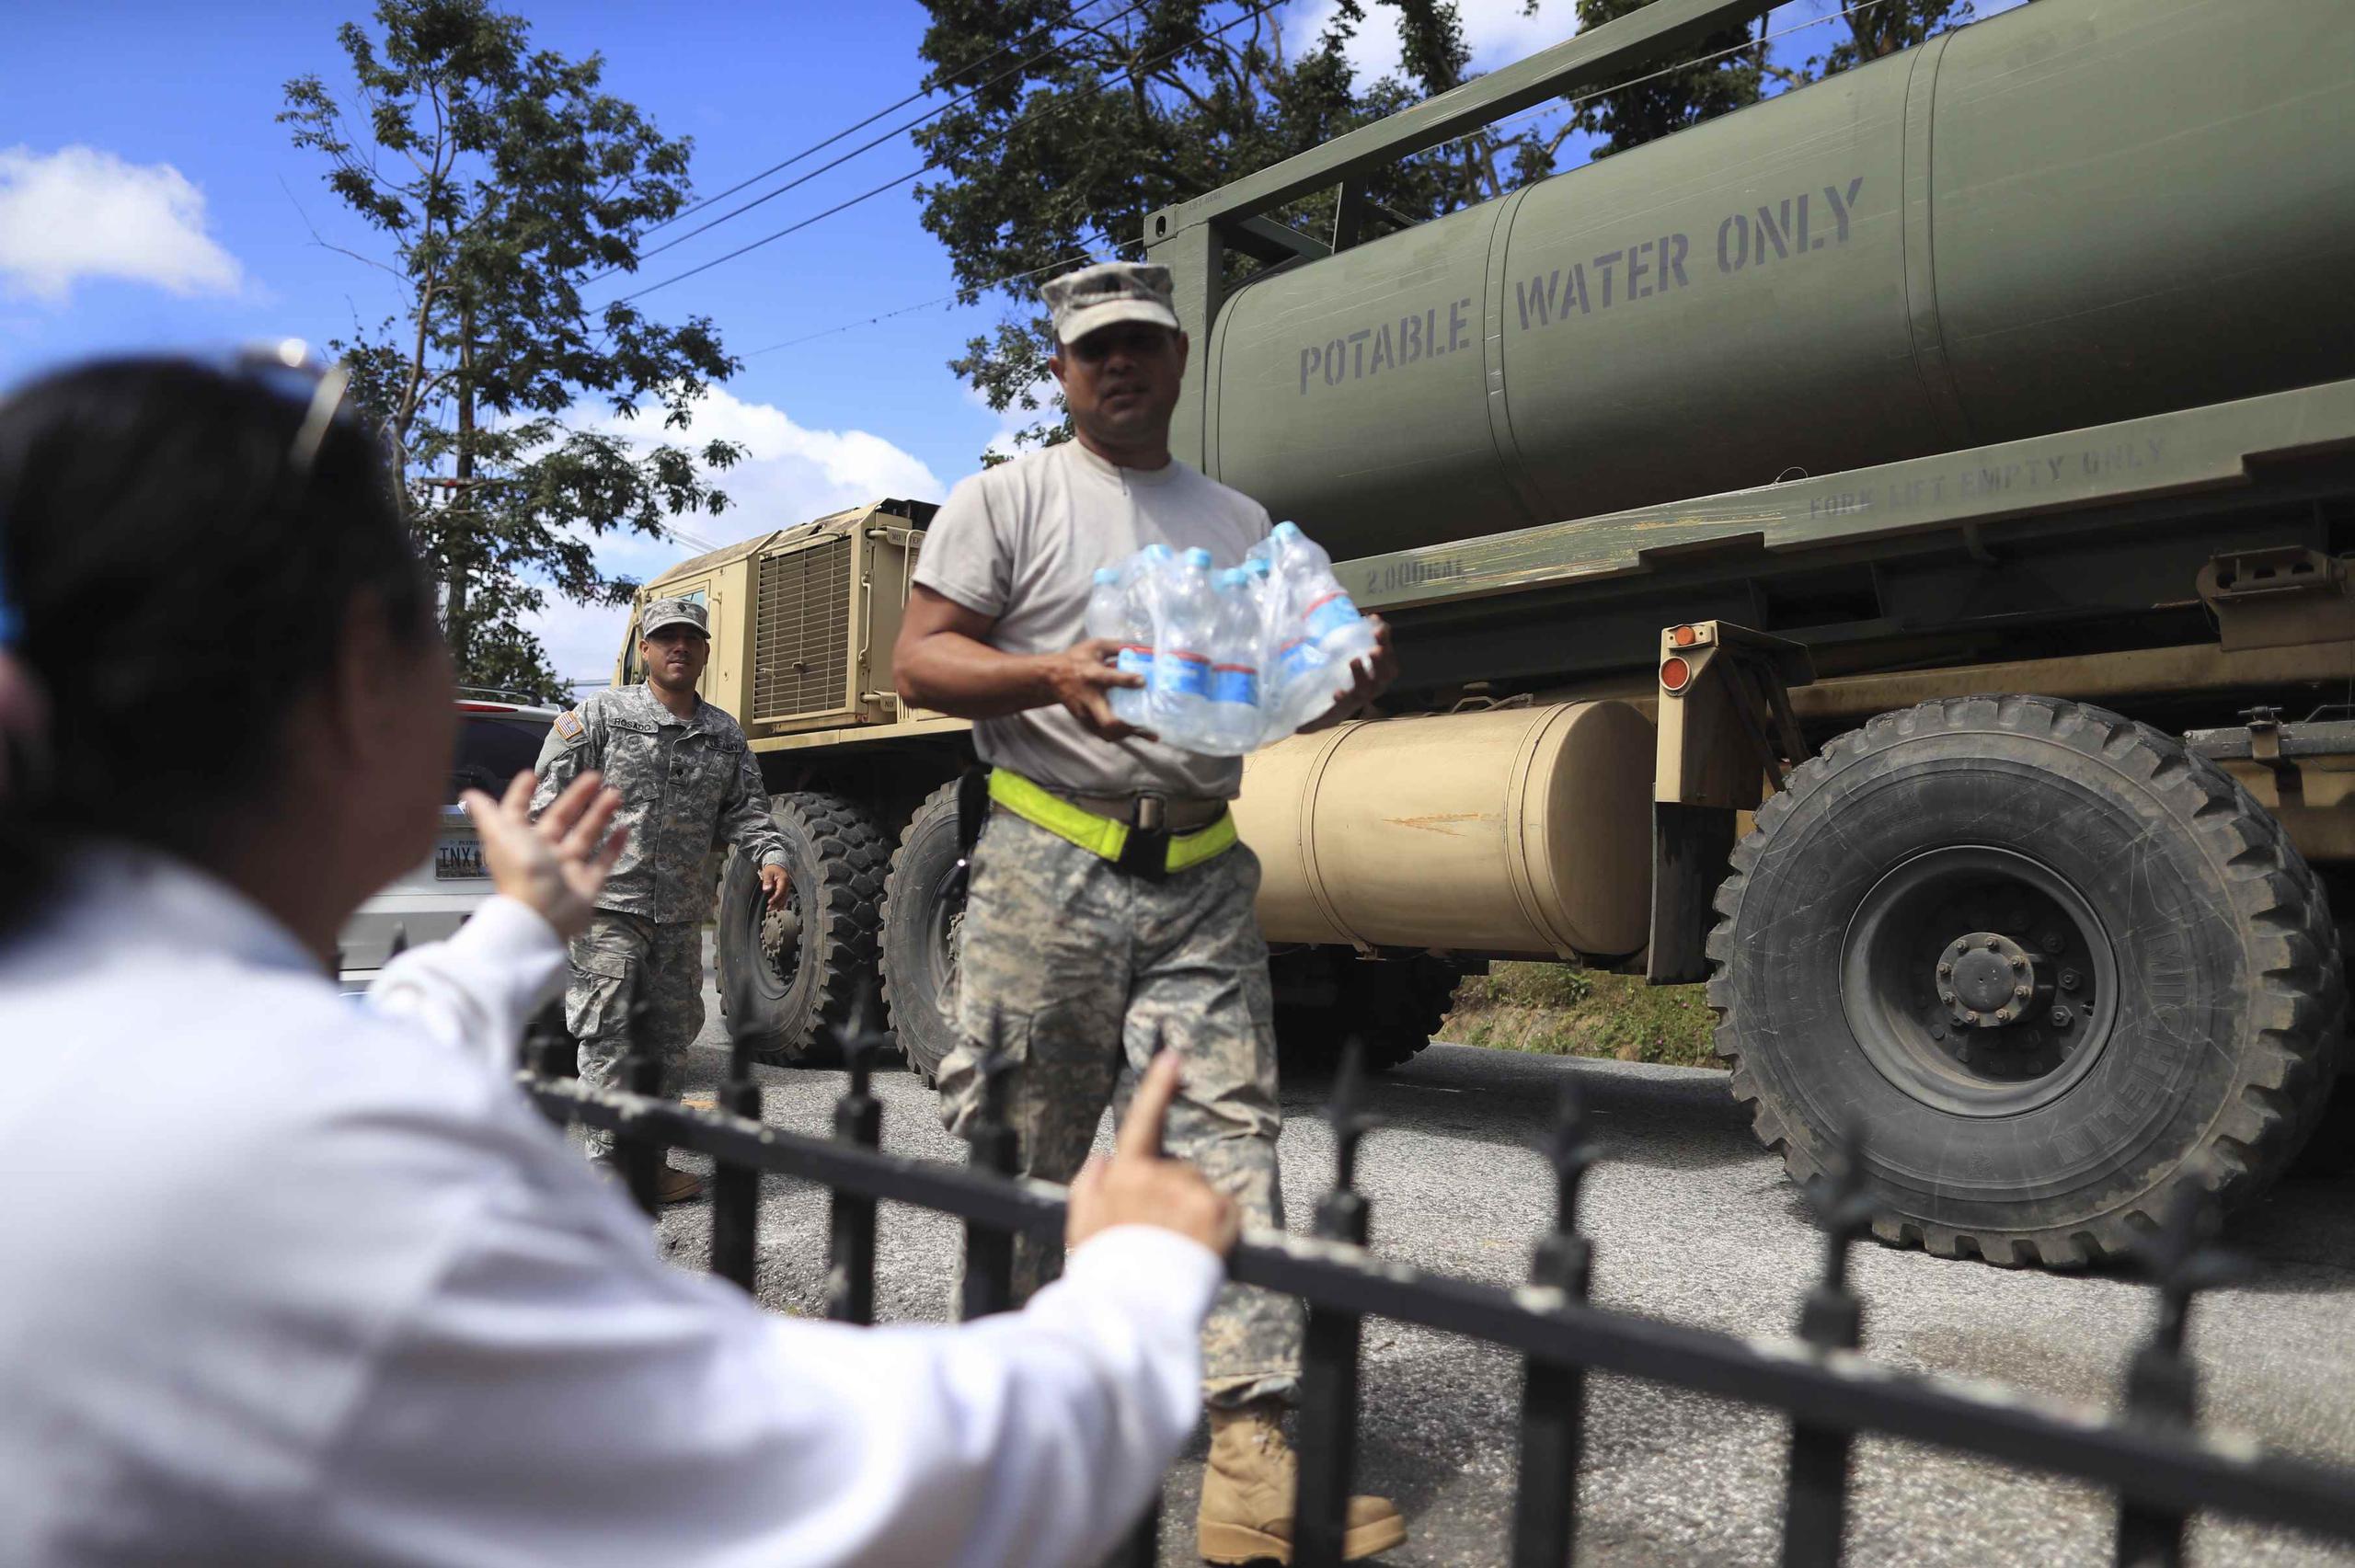 Lugo y su familia no cuentan con servicio de electricidad ni agua potable desde el paso de María el 20 de septiembre de 2017. Un soldado de la Guardia Nacional le entrega a Lugo botellas de agua.